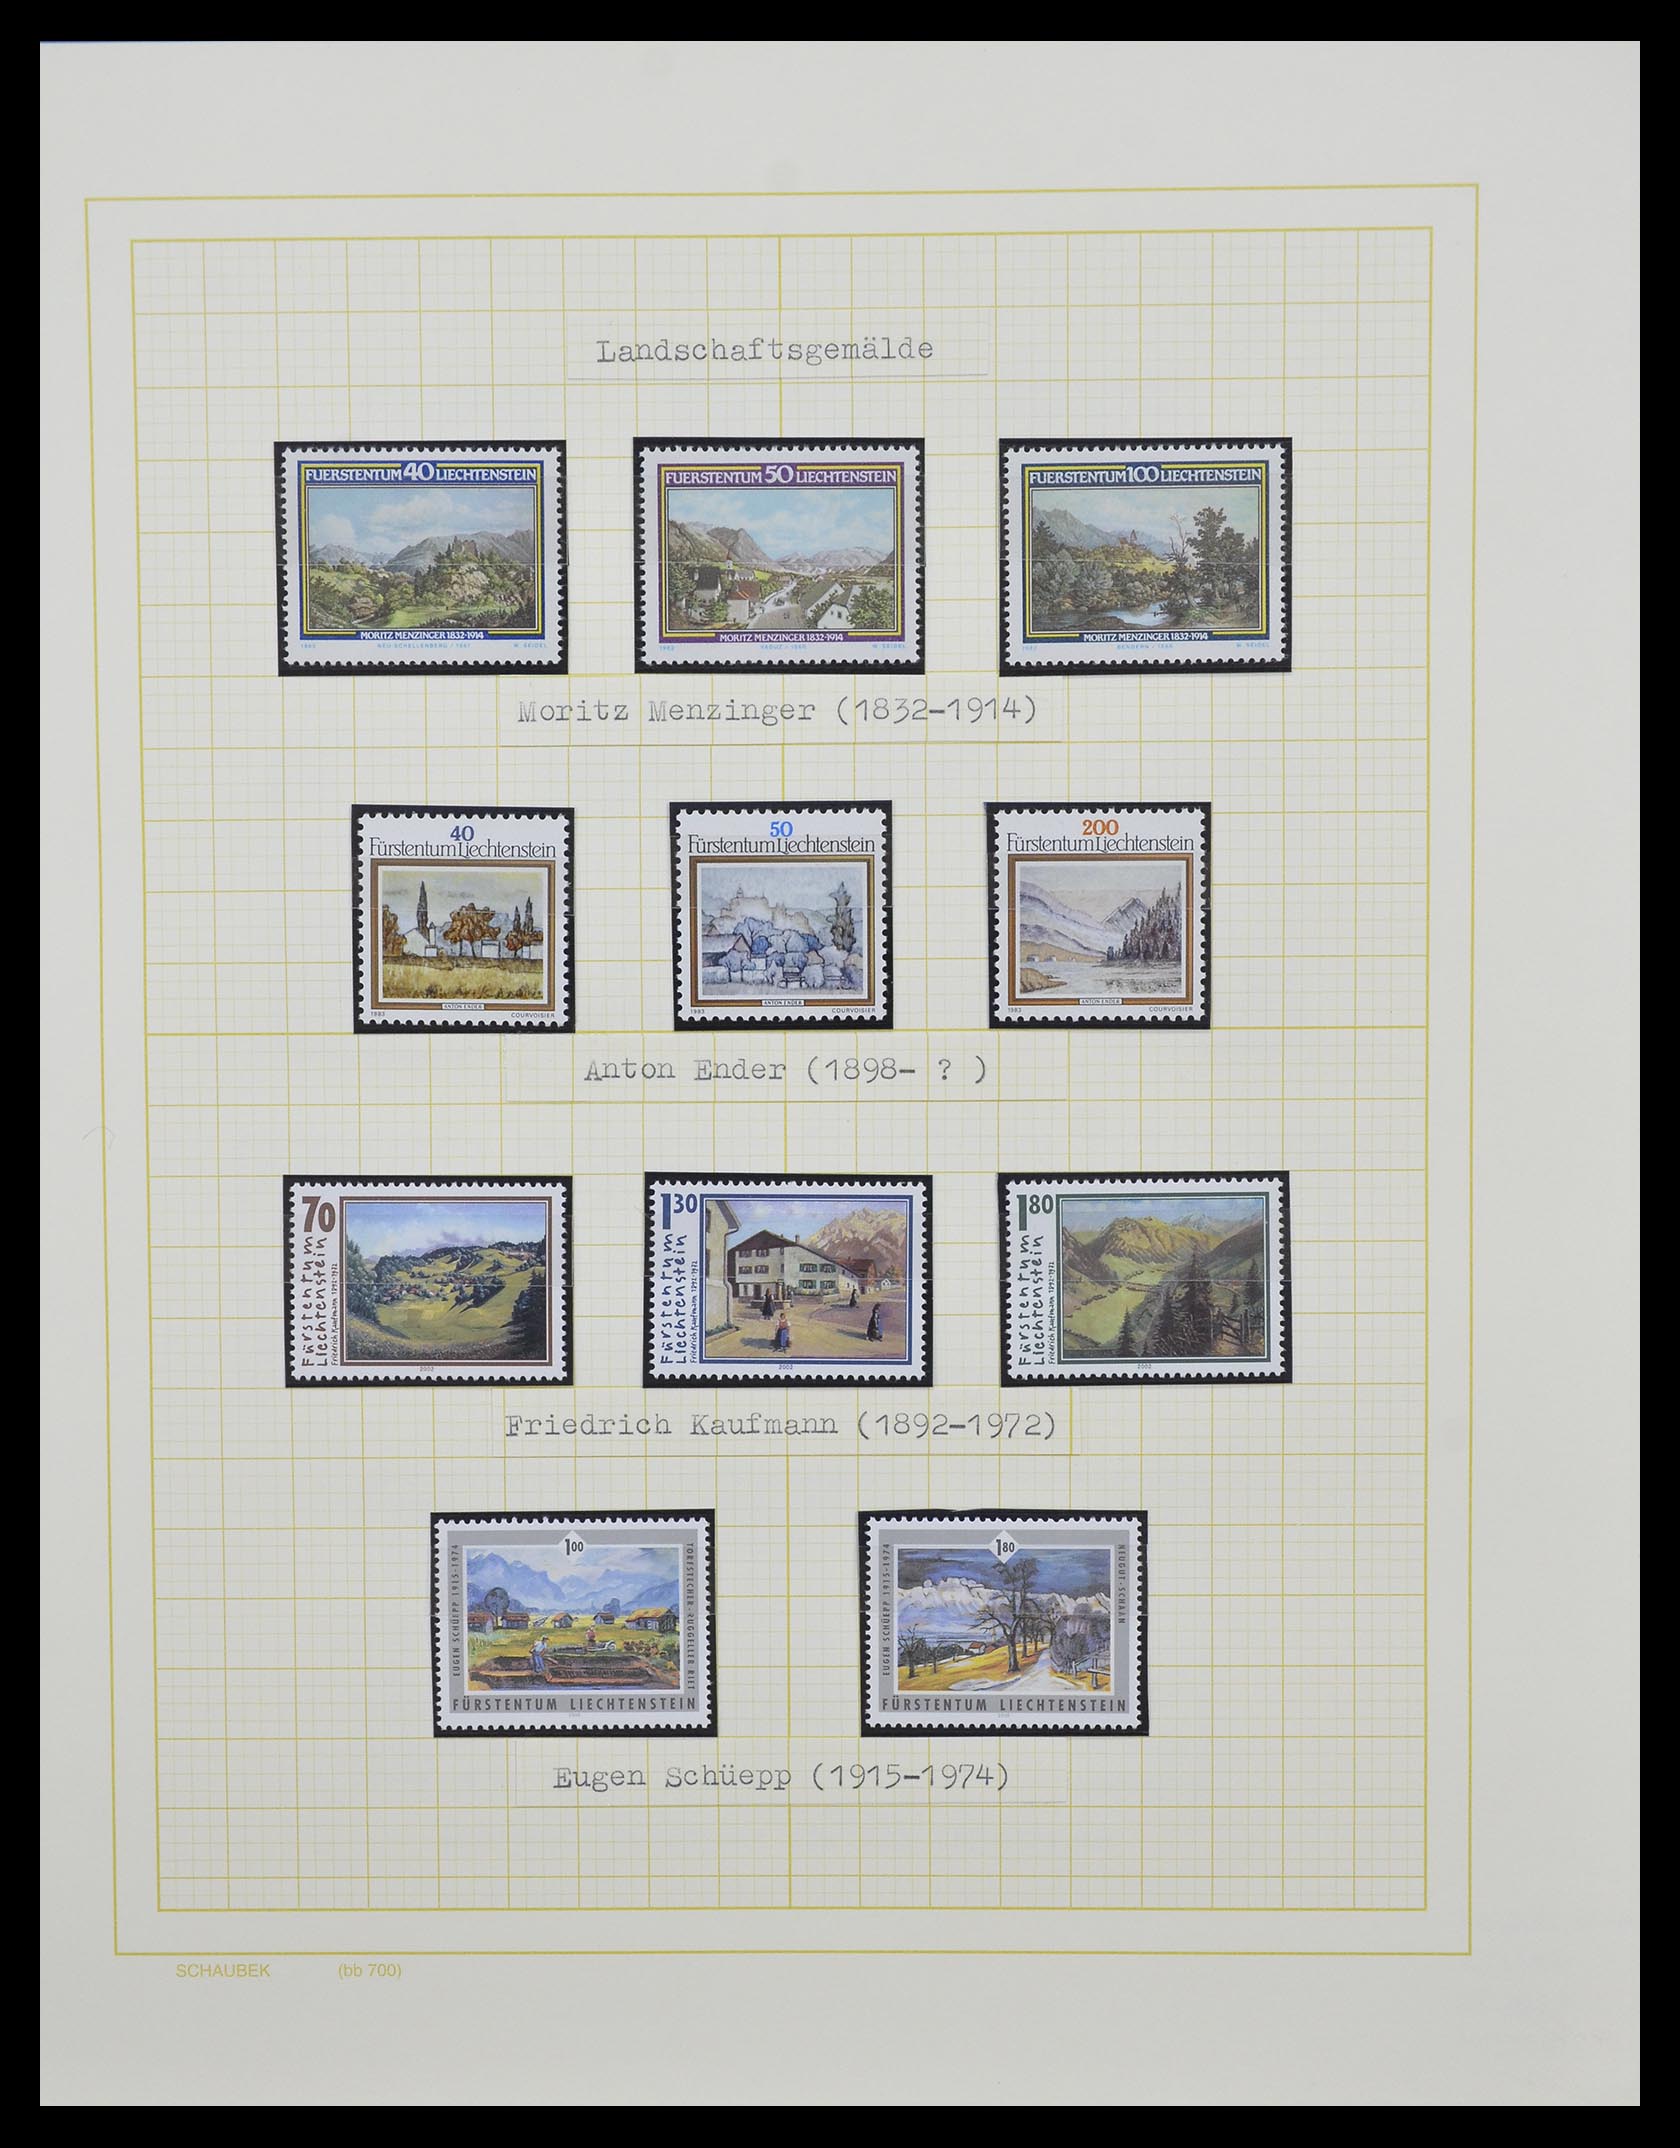 33138 075 - Stamp collection 33138 Liechtenstein 1912-2002.